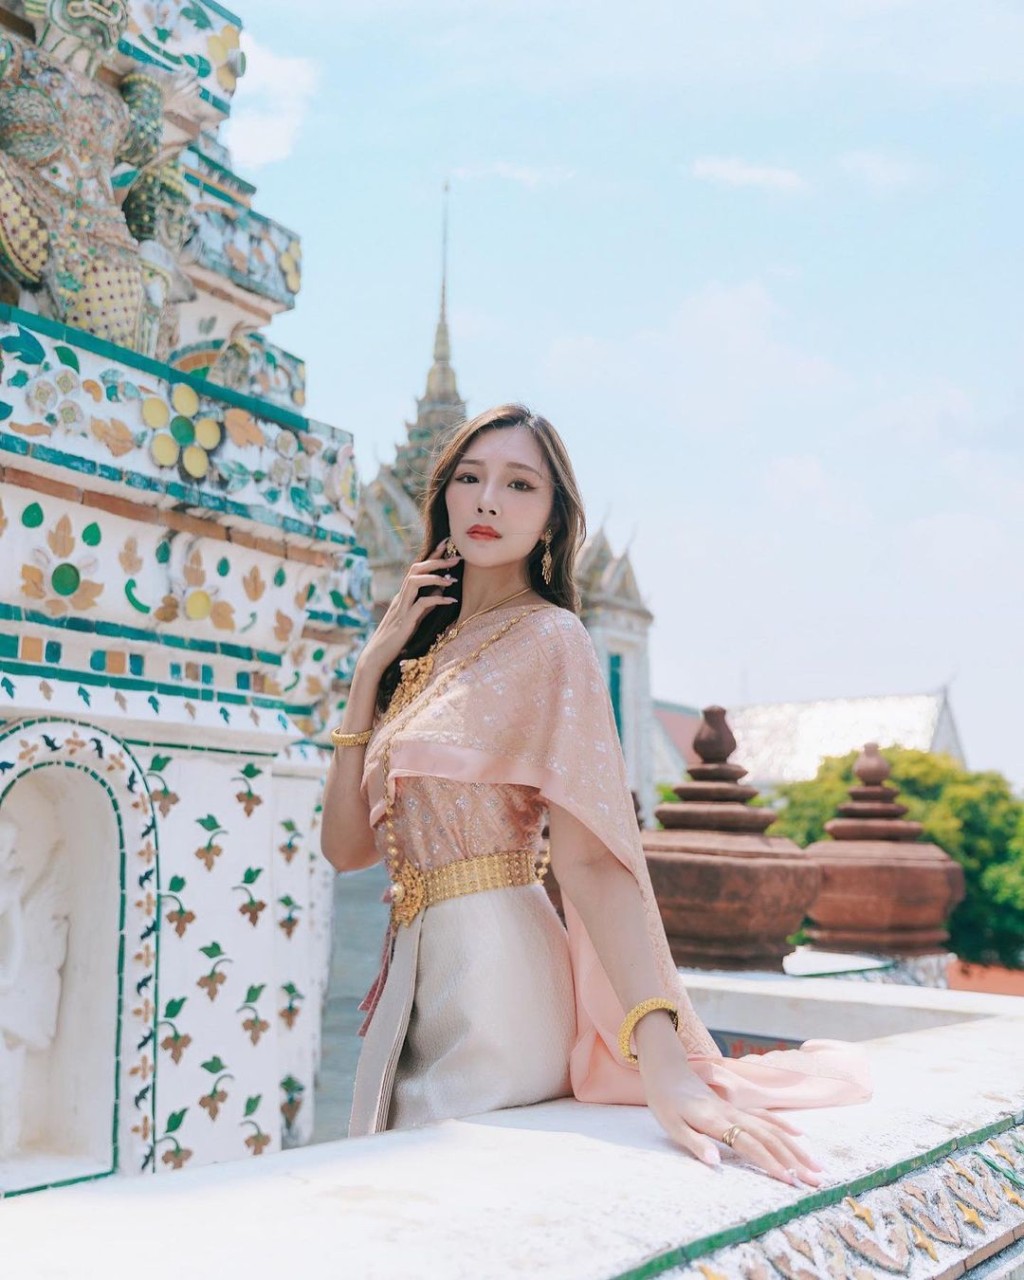 梁允瑜又去泰国度假。